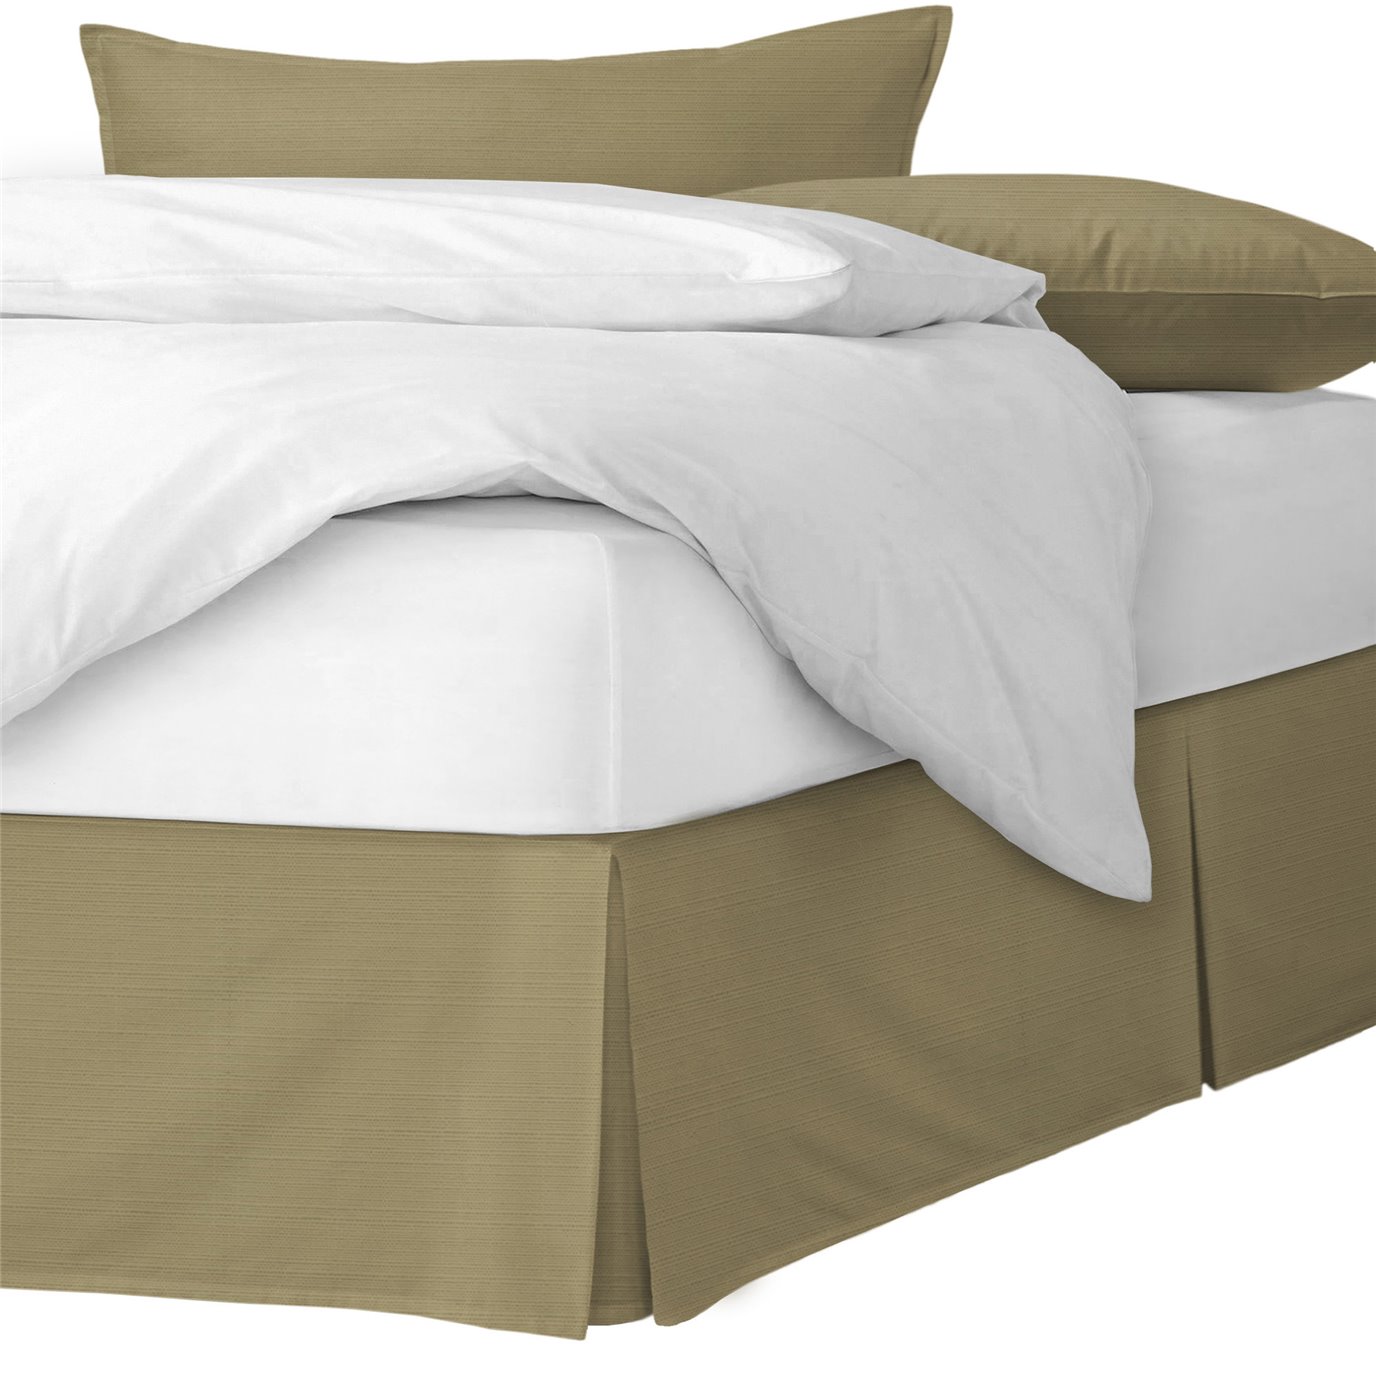 Nova Gold Platform Bed Skirt - Size Twin 18" Drop